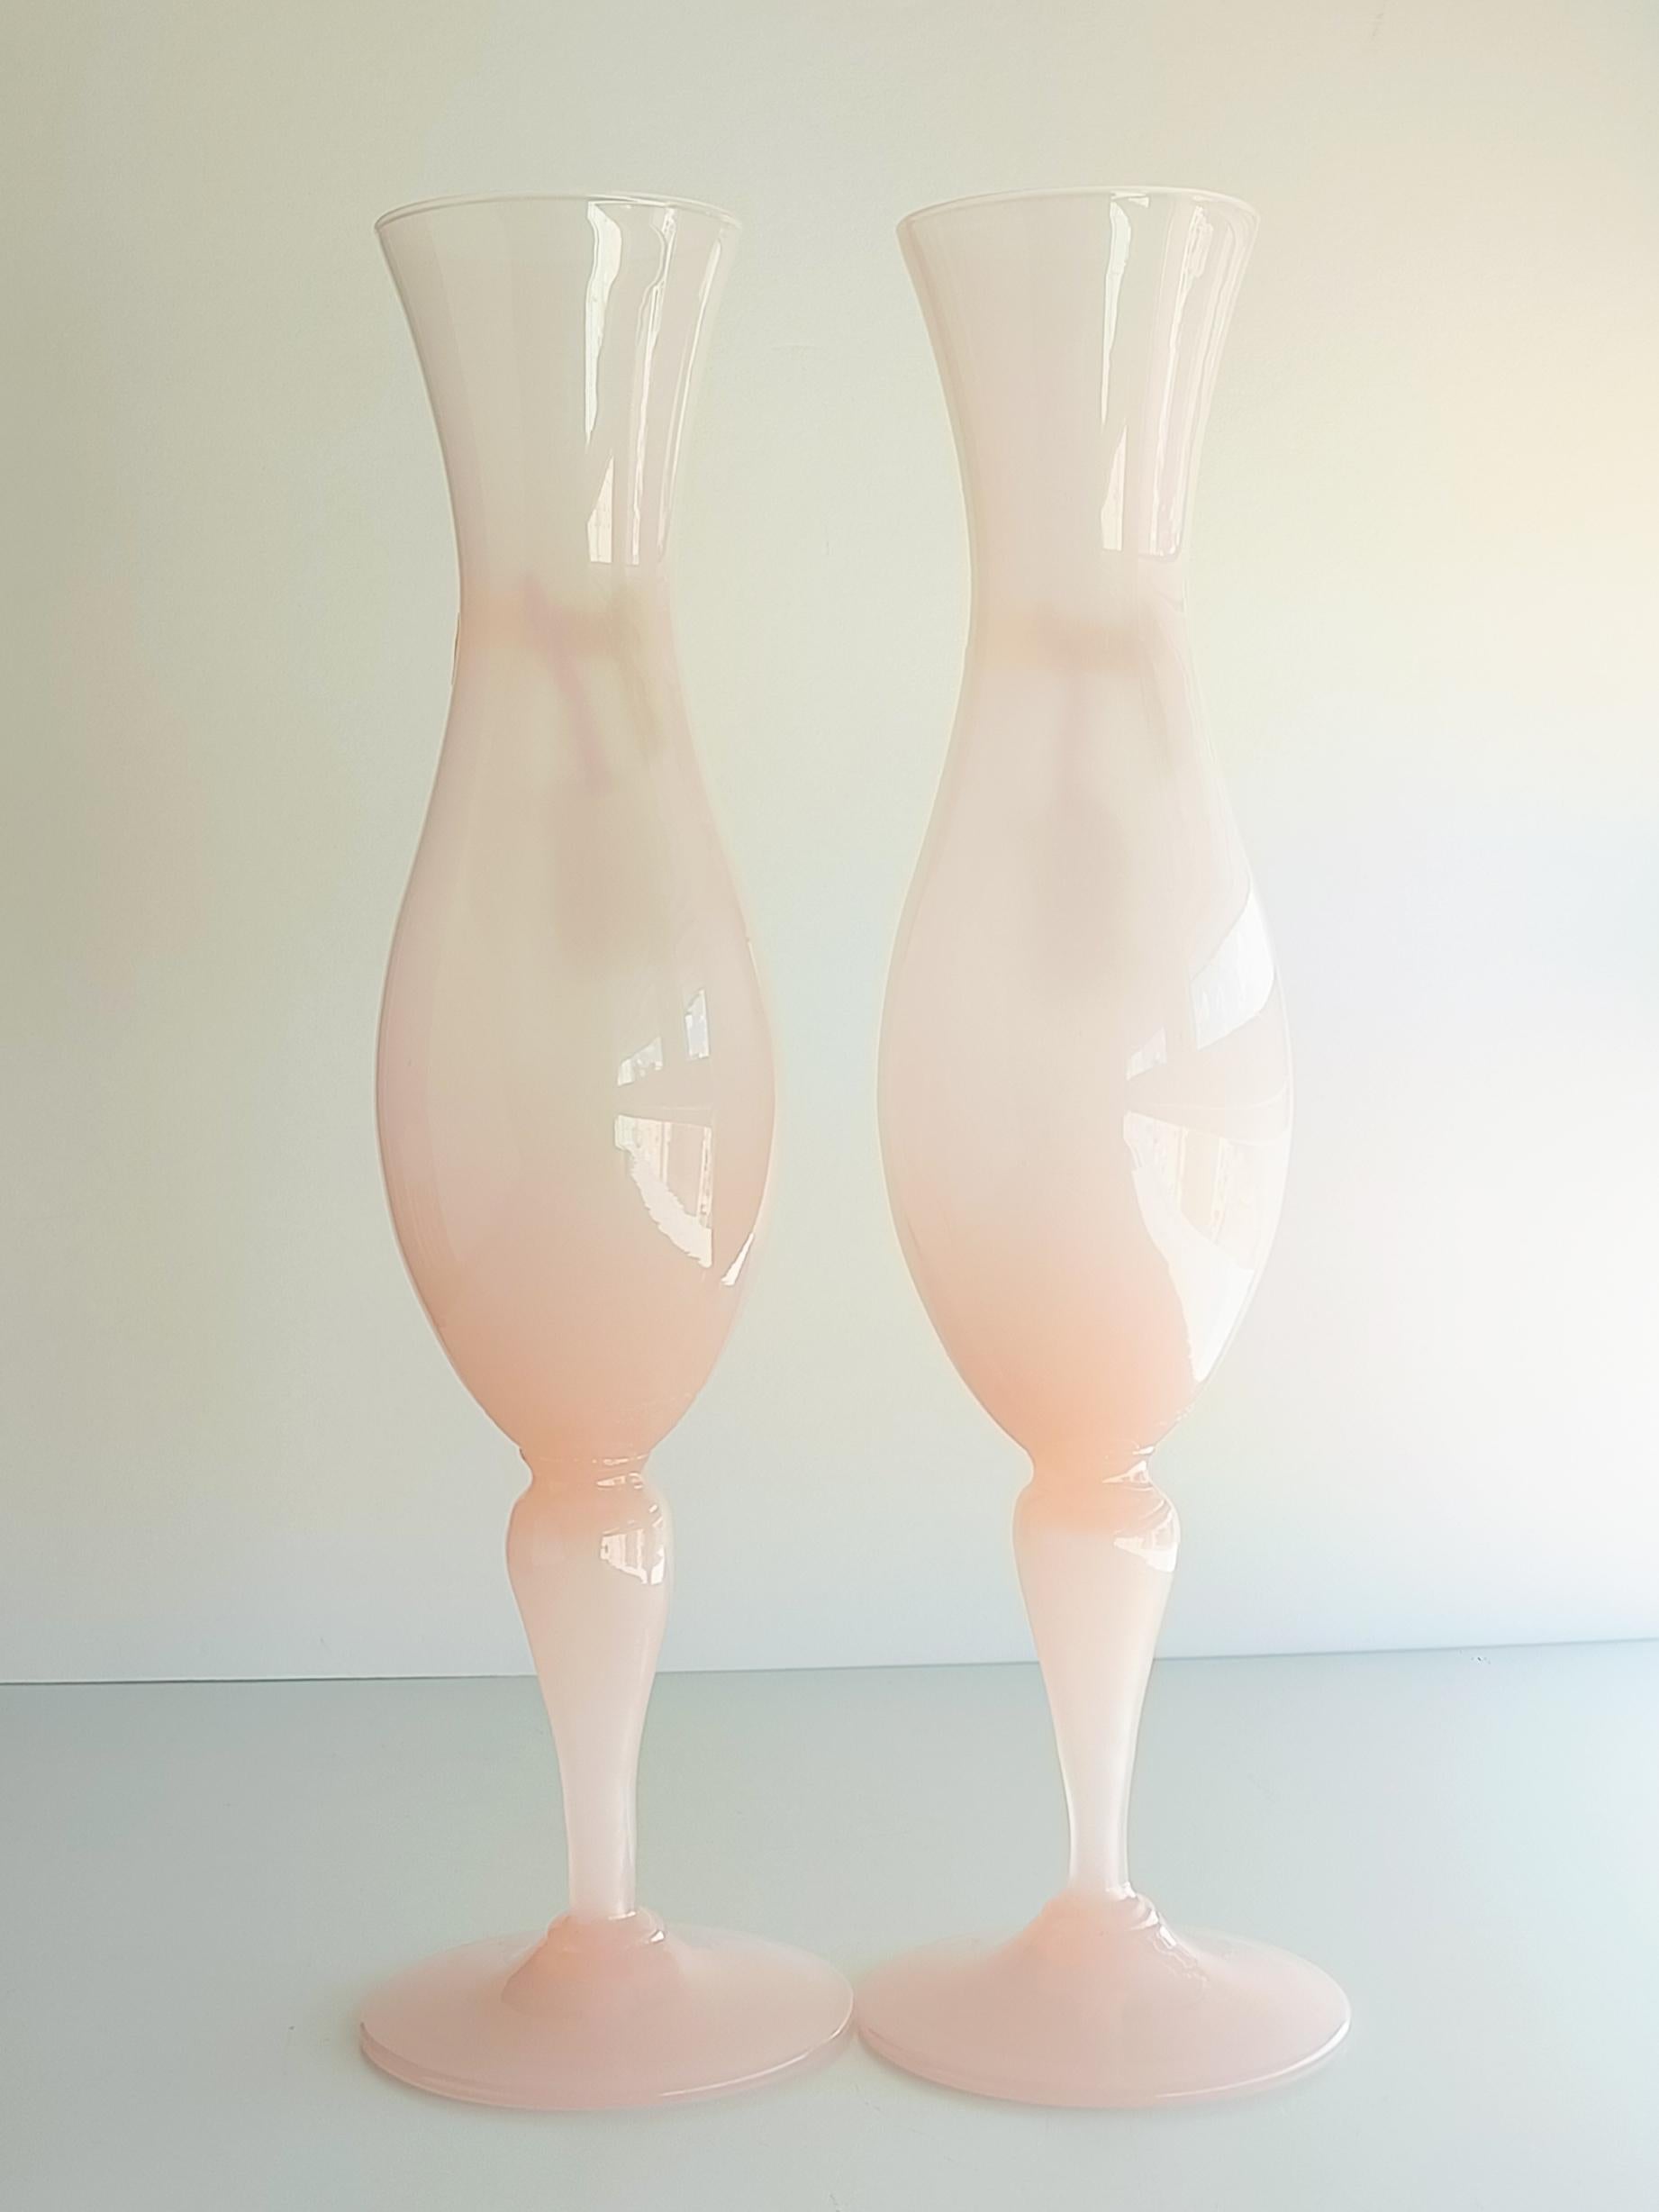 Au-delà de l'élégance des grands verres nacrés translucides en véritable opale d'Empoli, étiquetés Opalina Florentina Cup-Vases.

Ces vases ont été stockés pendant des décennies (depuis les années 1950) dans le sous-sol d'un magasin de cadeaux en